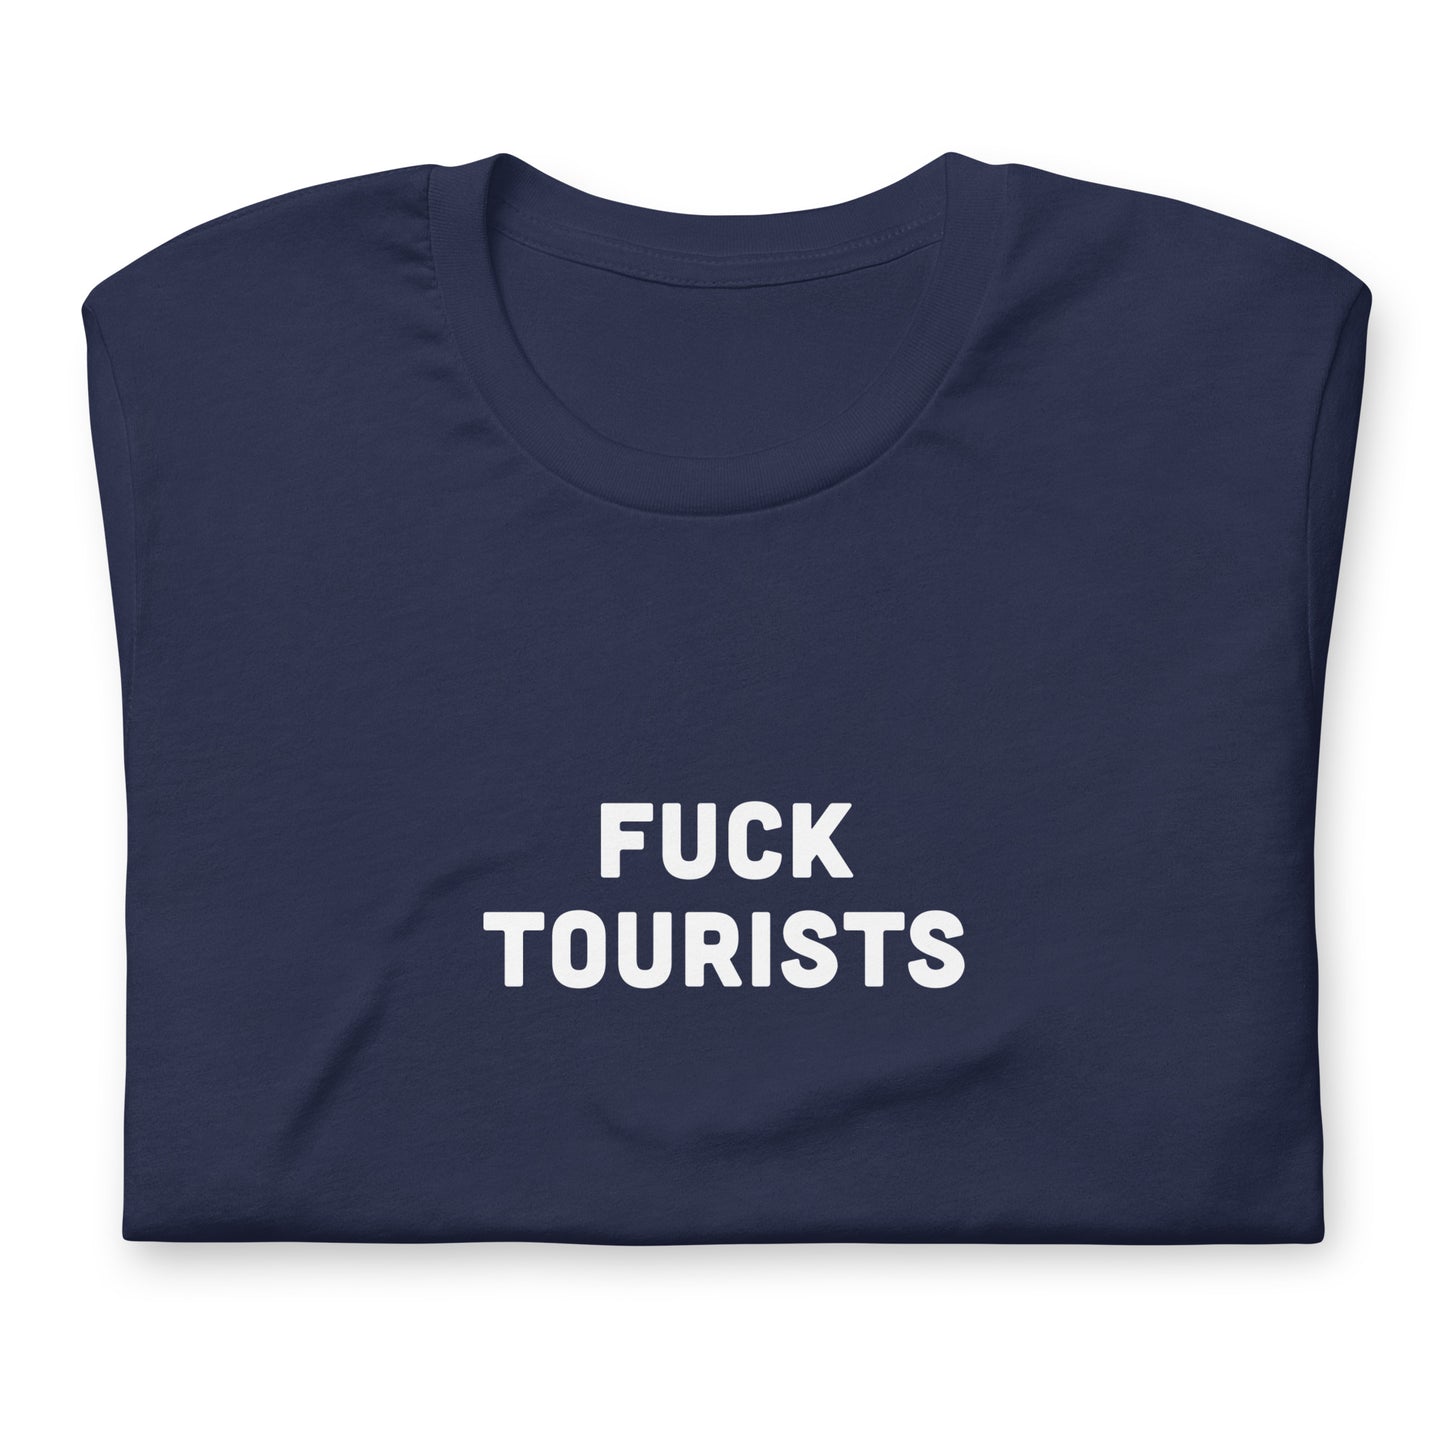 Fuck Tourists T-Shirt Size 2XL Color Black